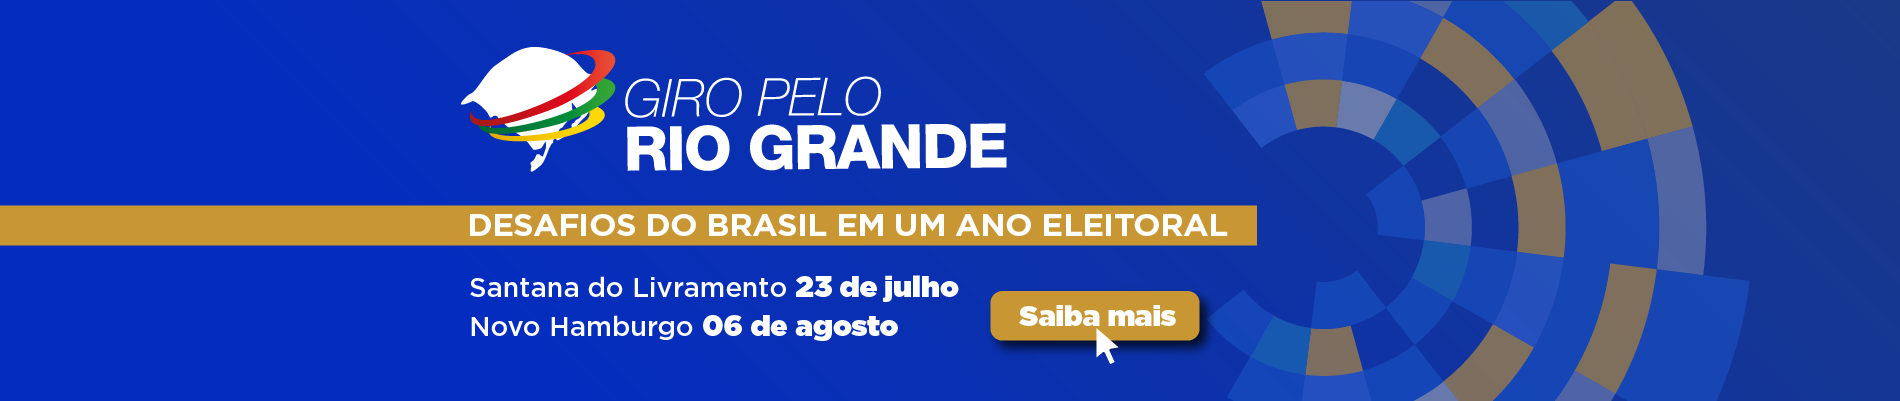 Inscrições Giro pelo Rio grande em Caxias do Sul